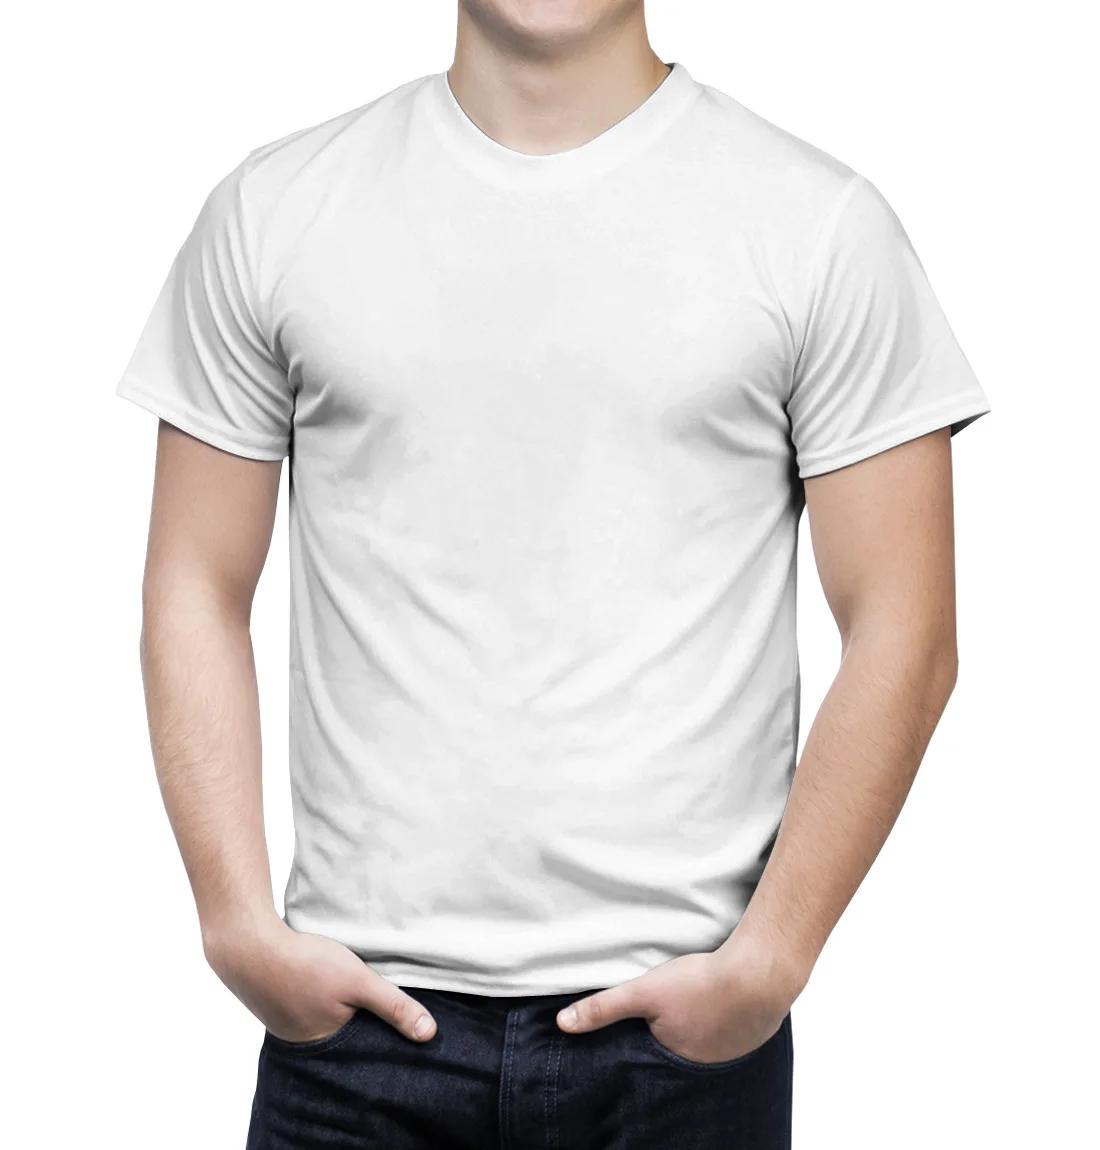 Майка на человеке. Белая футболка. Белая футболка мужская. Беллое футболка. Парень в белой футболке.